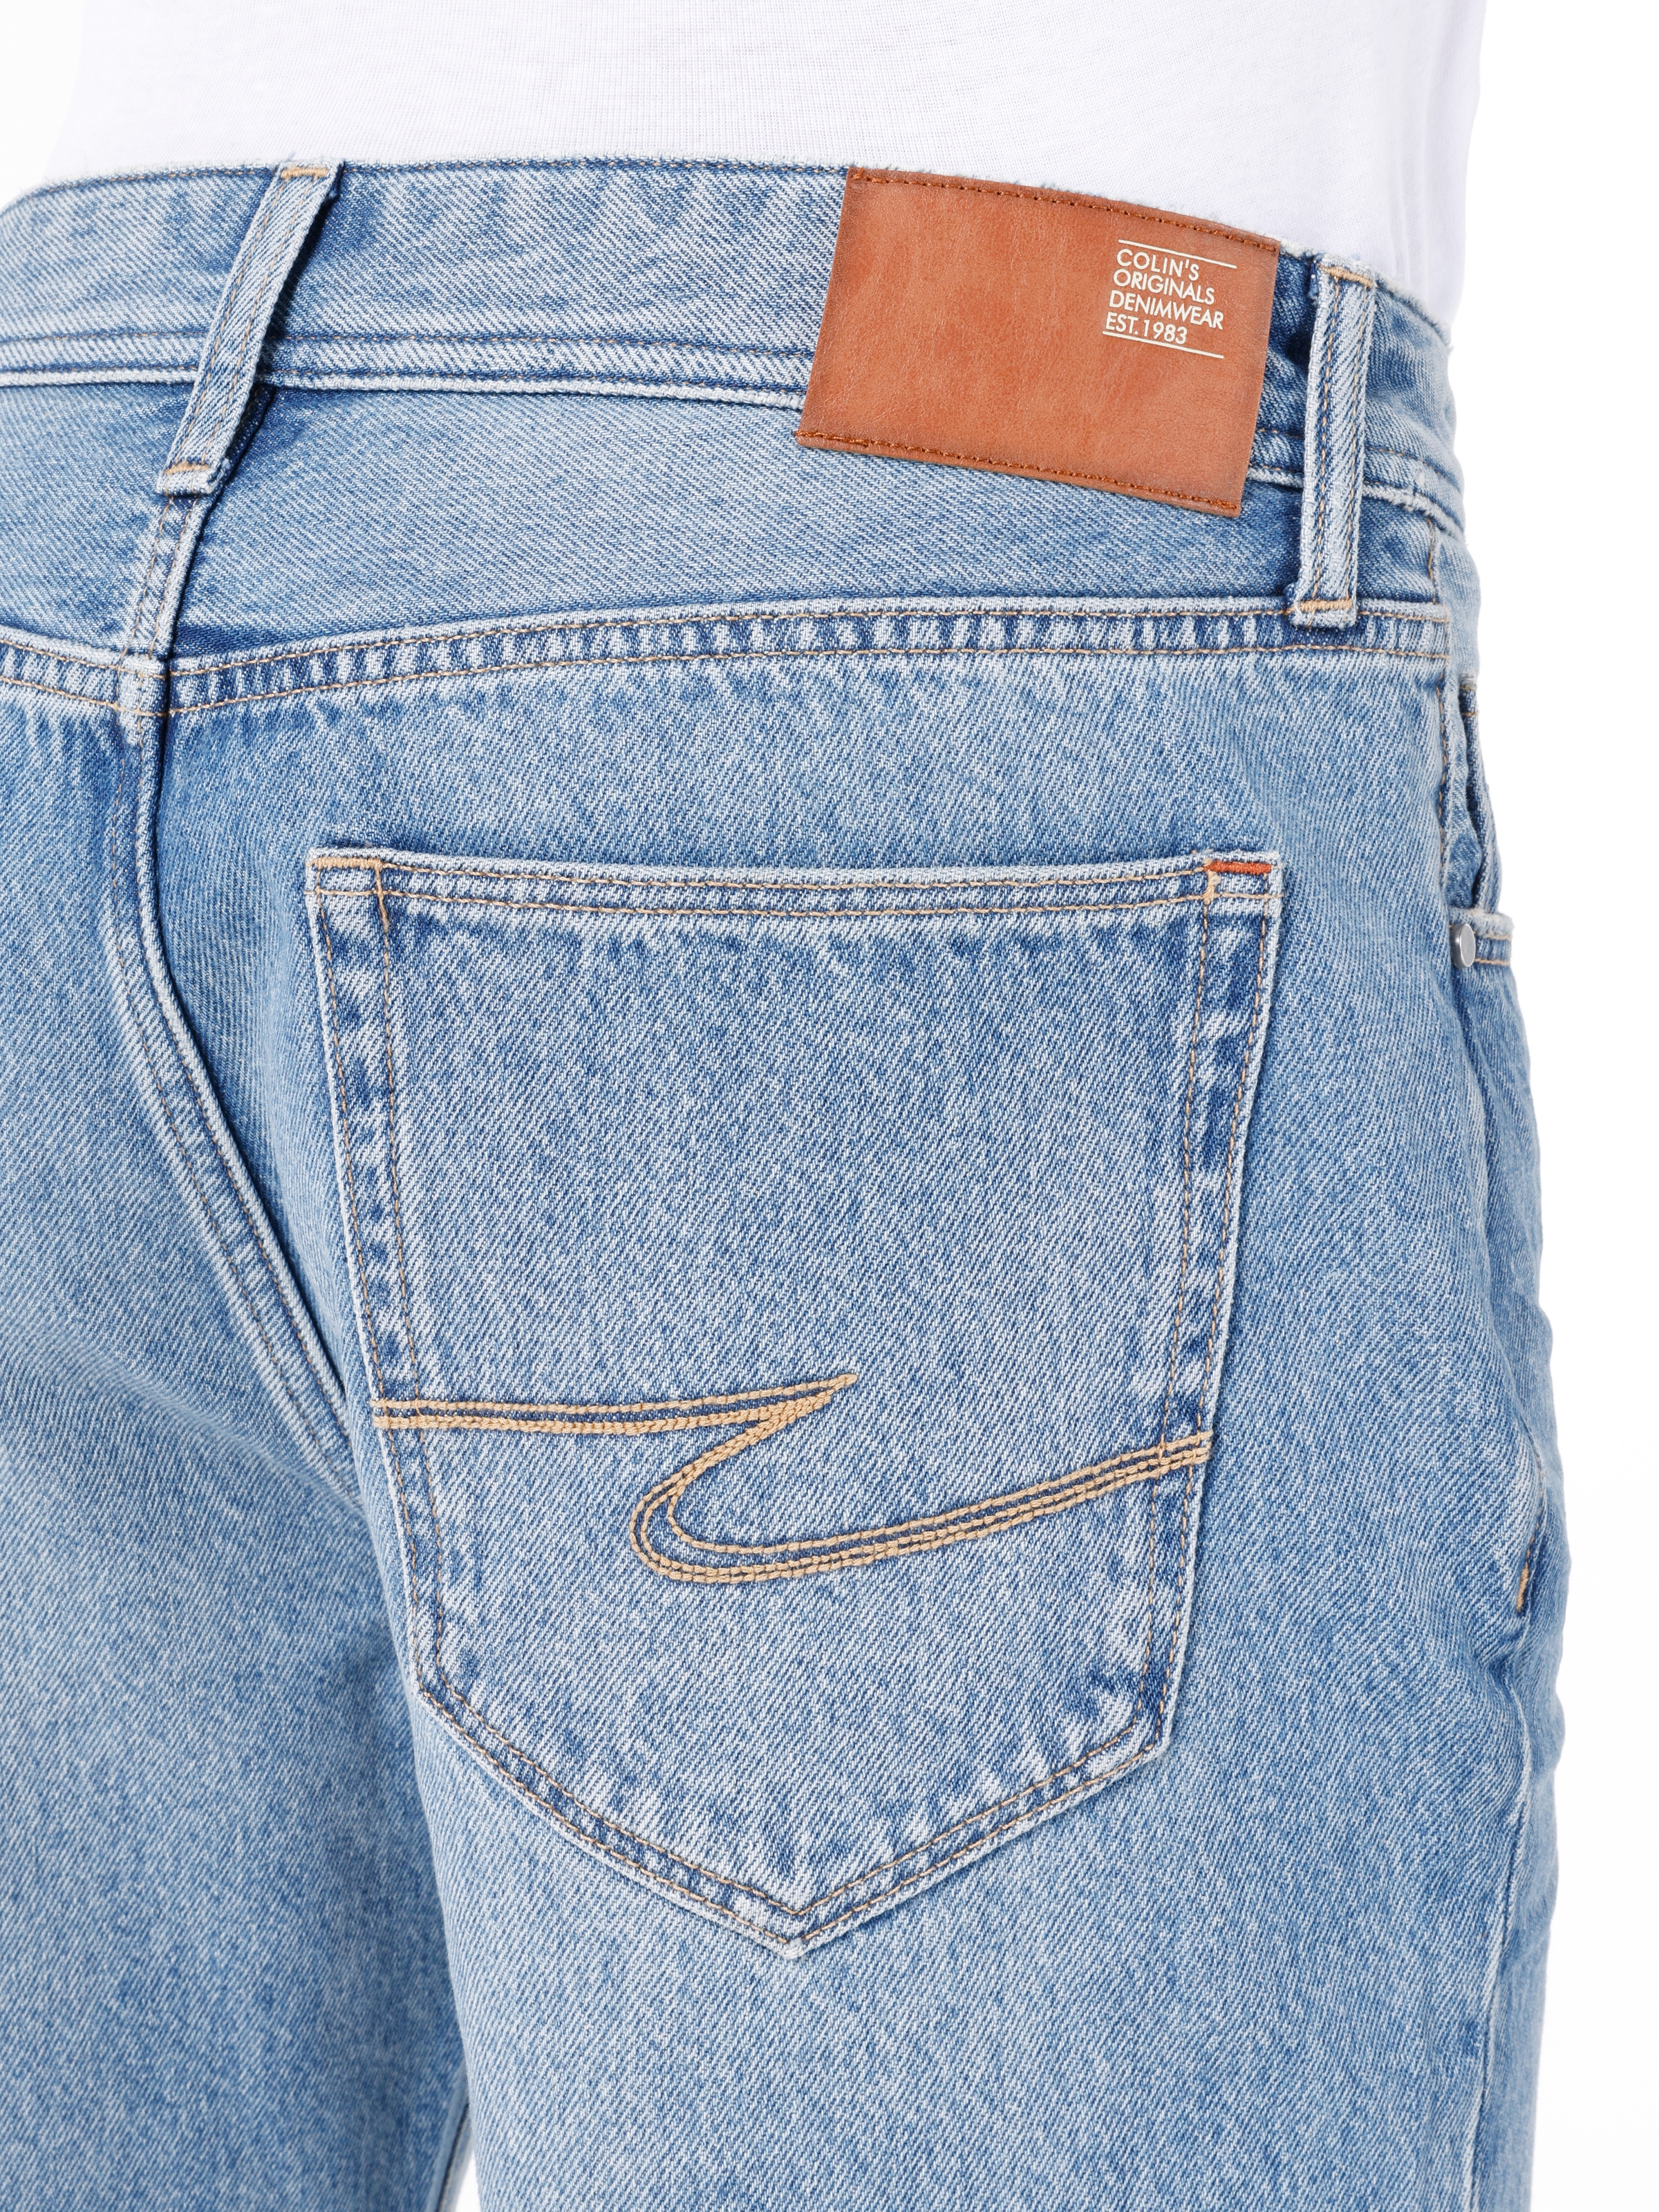 Afișați detalii pentru Short / Pantaloni Scurti De Barbati Albastru Regular Fit 045 DAVID 